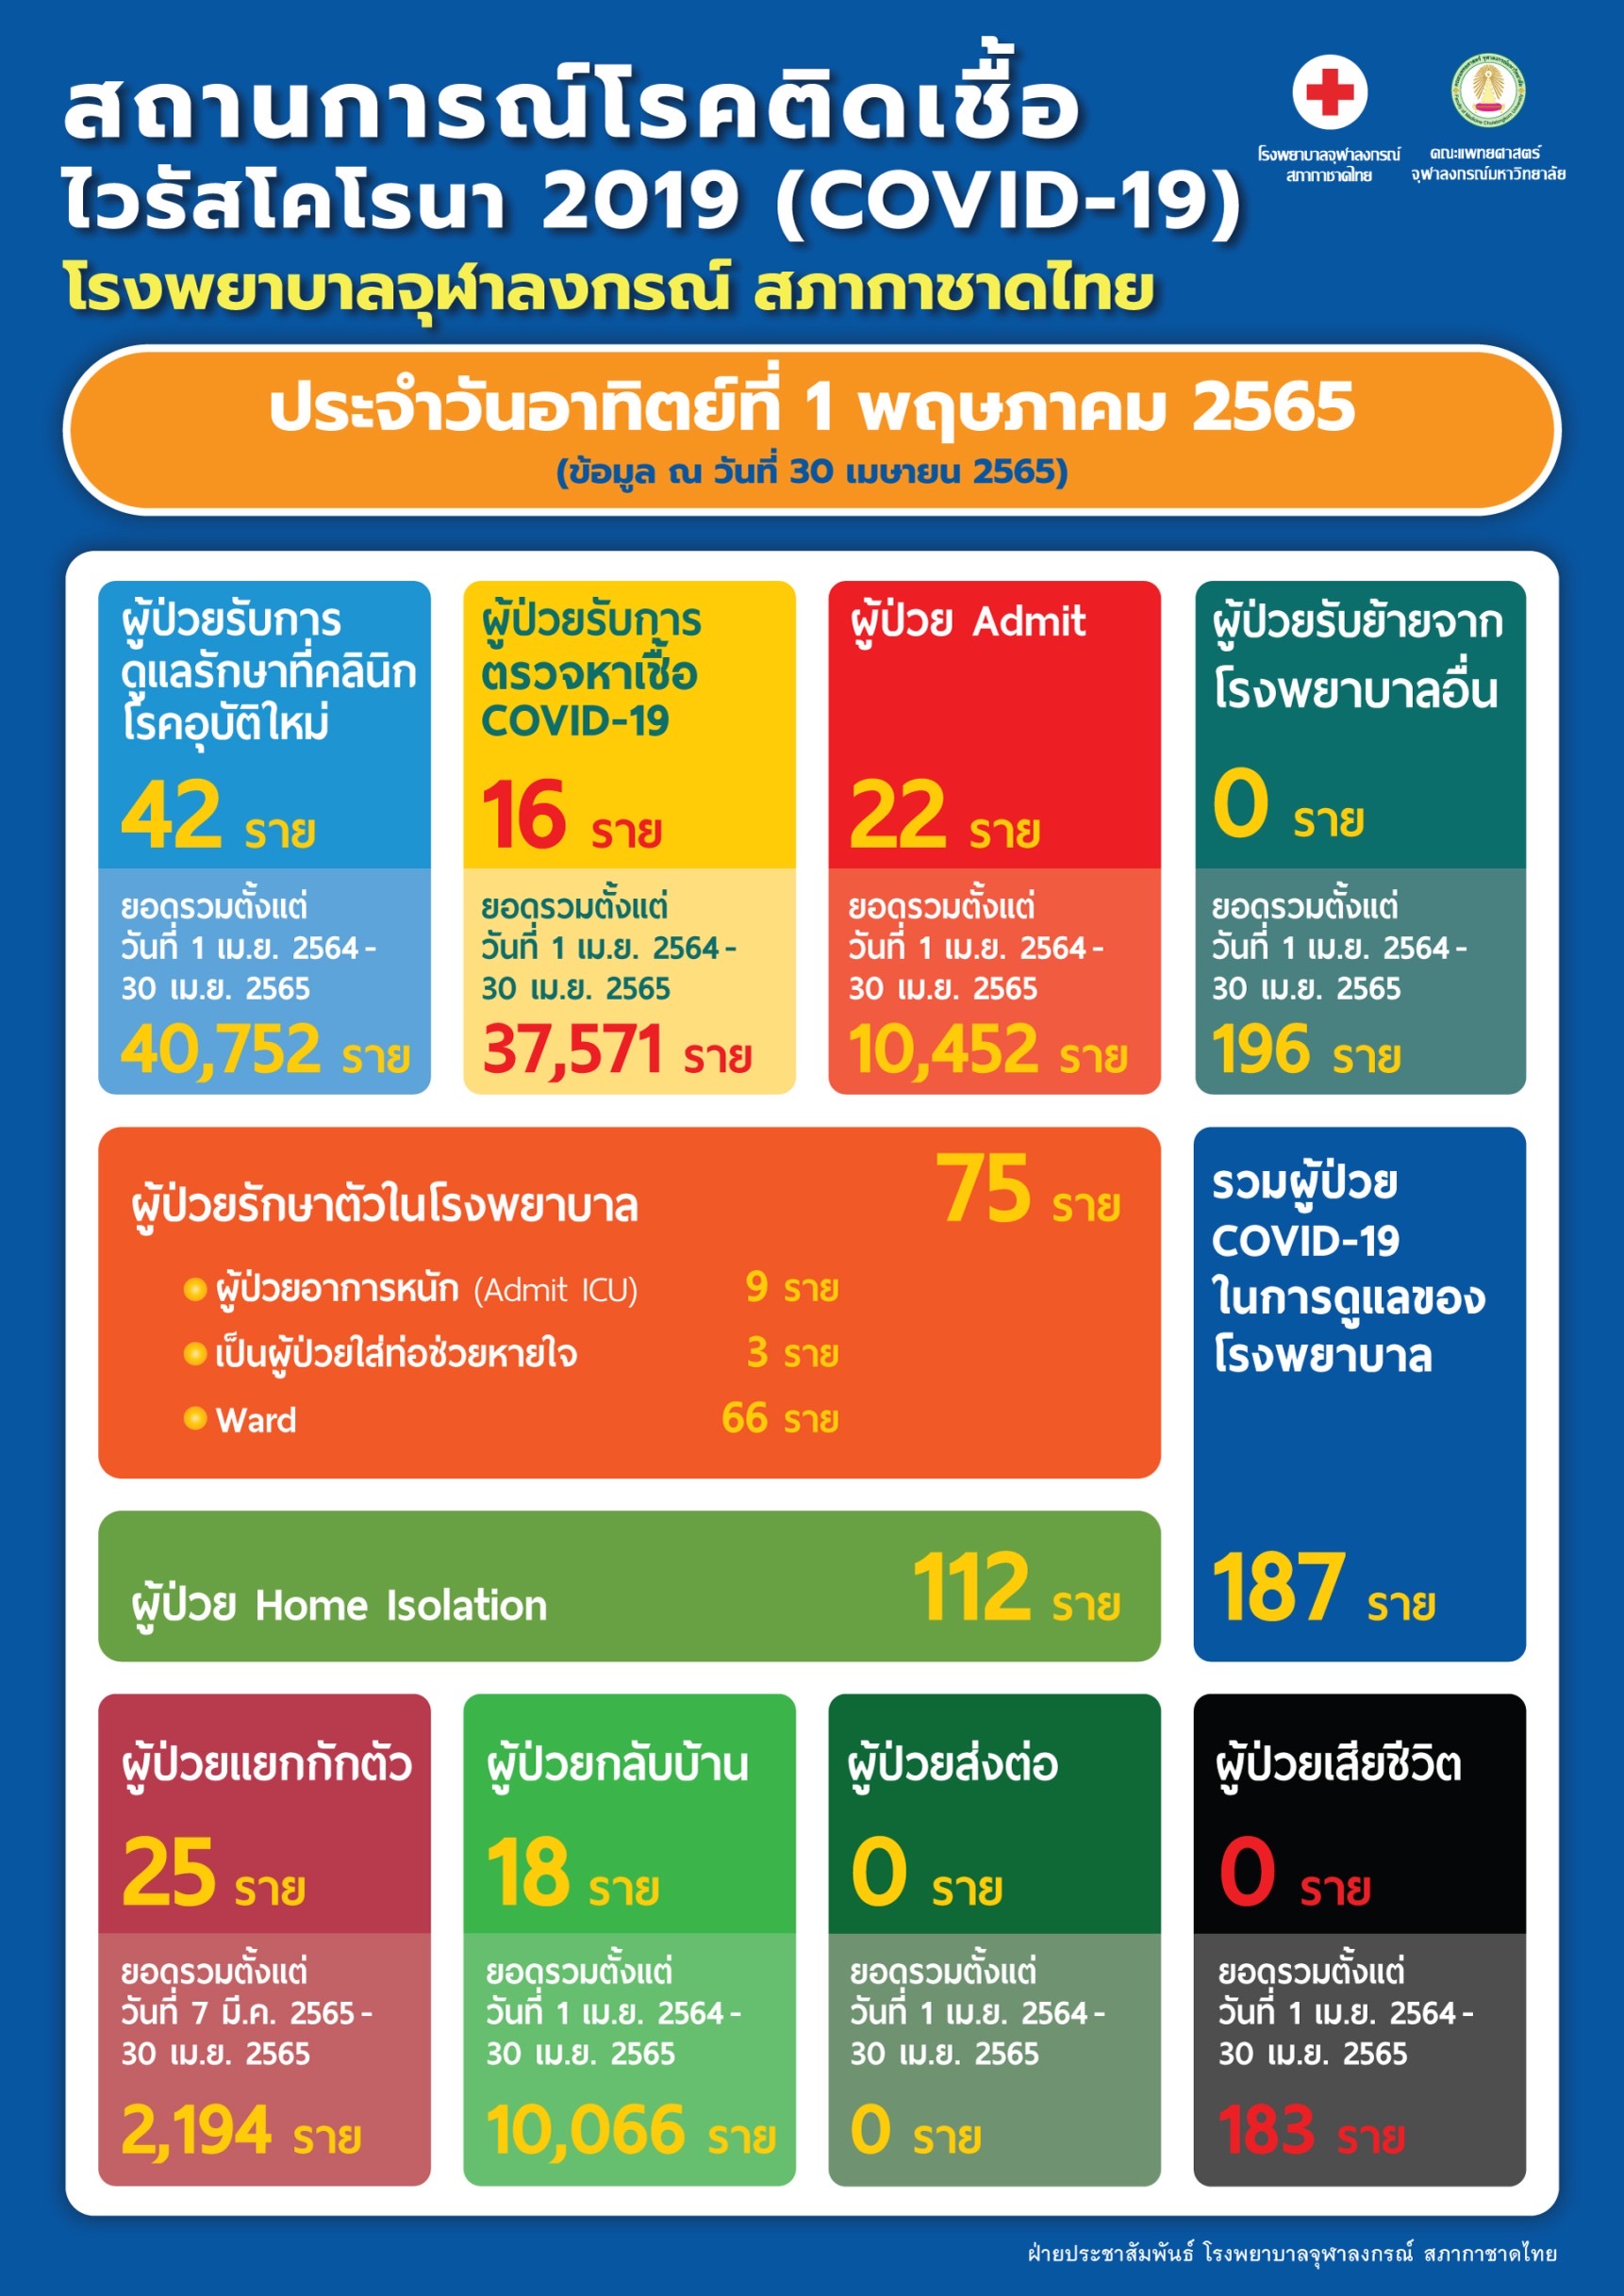 สถานการณ์โรคติดเชื้อ ไวรัสโคโรนา 2019 (COVID-19) โรงพยาบาลจุฬาลงกรณ์ สภากาชาดไทย ประจำวันอาทิตย์ที่ 1 พฤษภาคม 2565